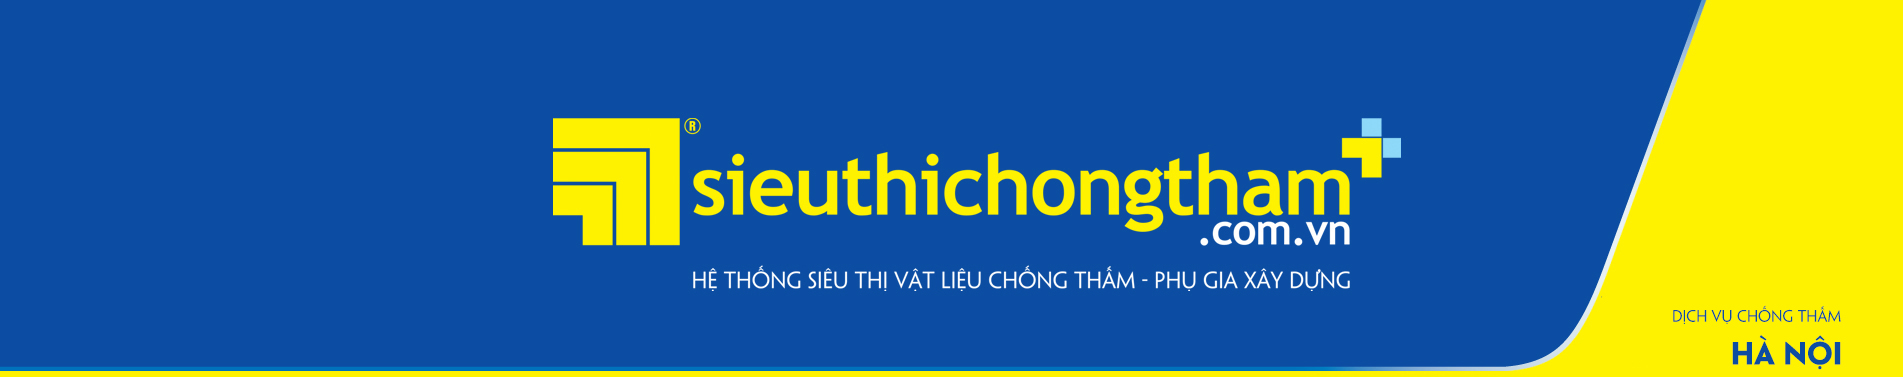 Dich Vu Chong Tham Ha Noi